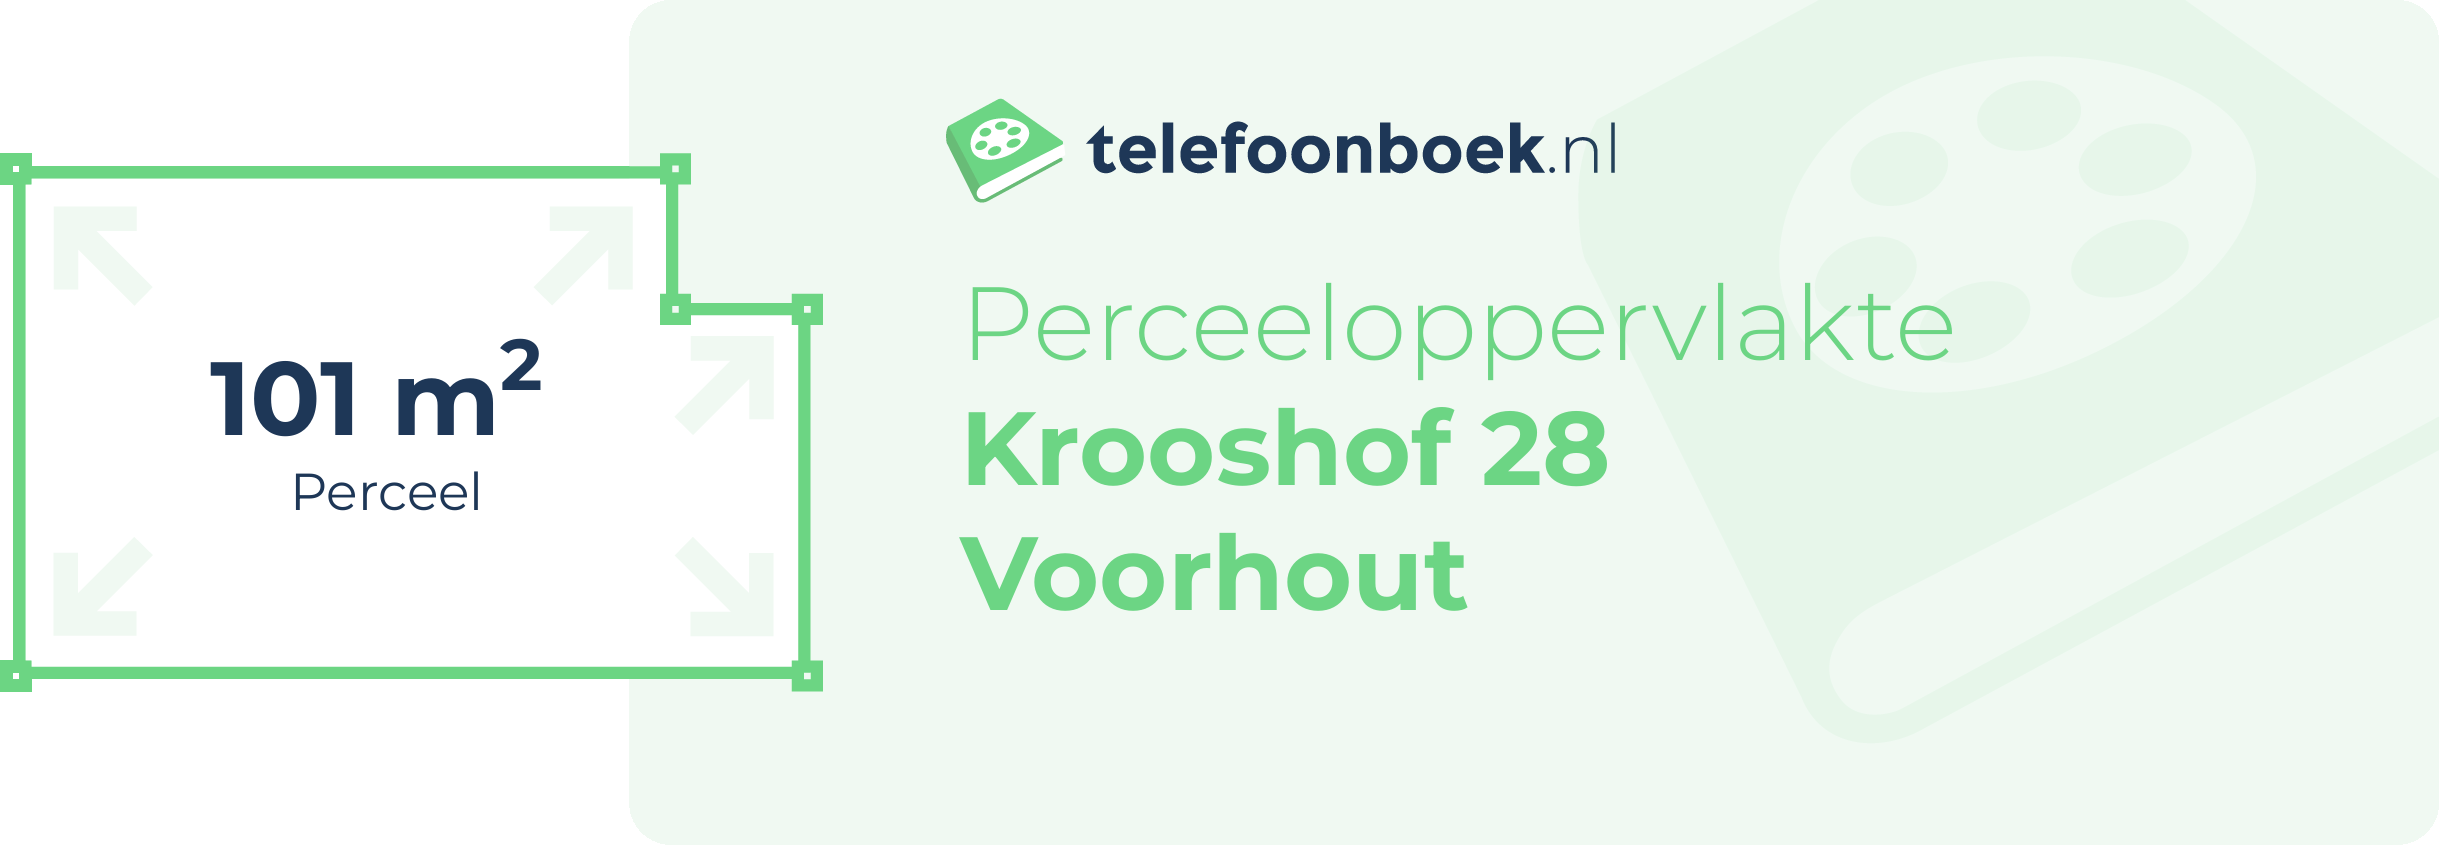 Perceeloppervlakte Krooshof 28 Voorhout